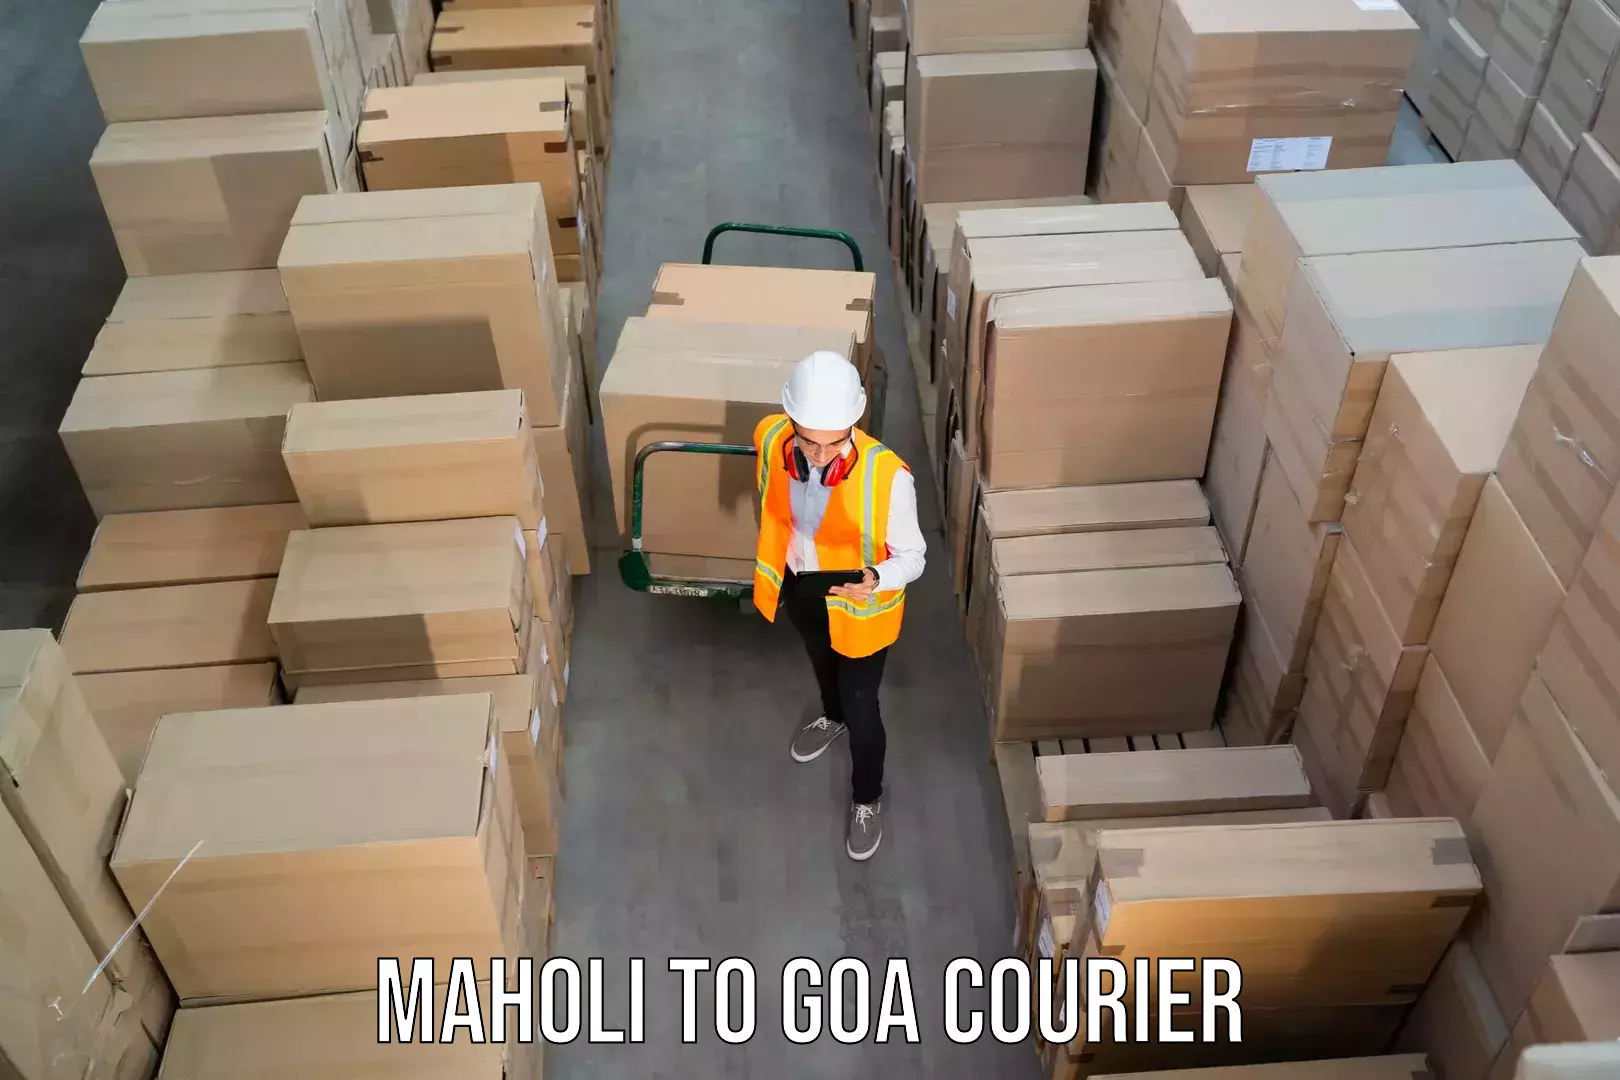 High-capacity parcel service Maholi to Goa